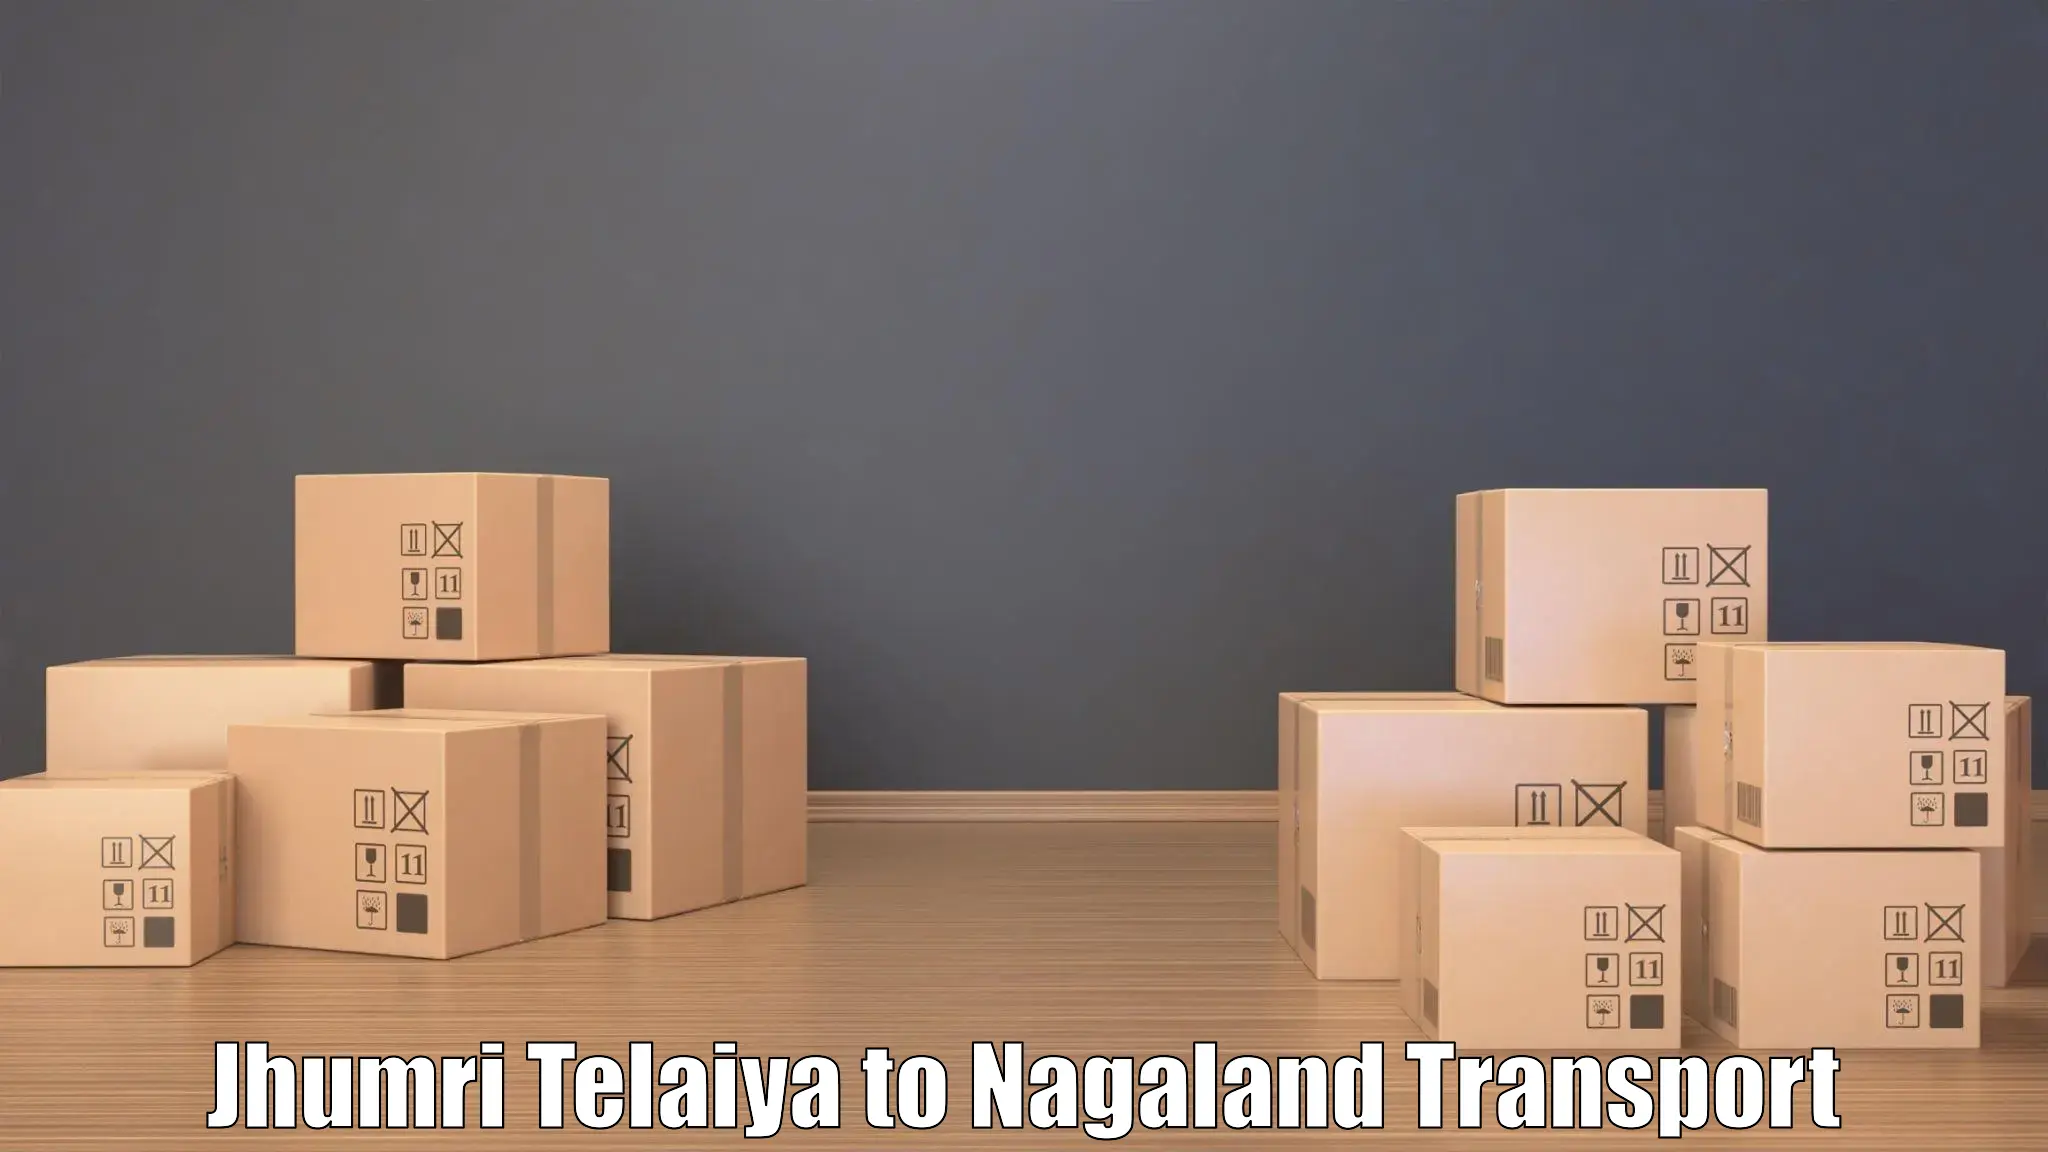 Truck transport companies in India Jhumri Telaiya to NIT Nagaland